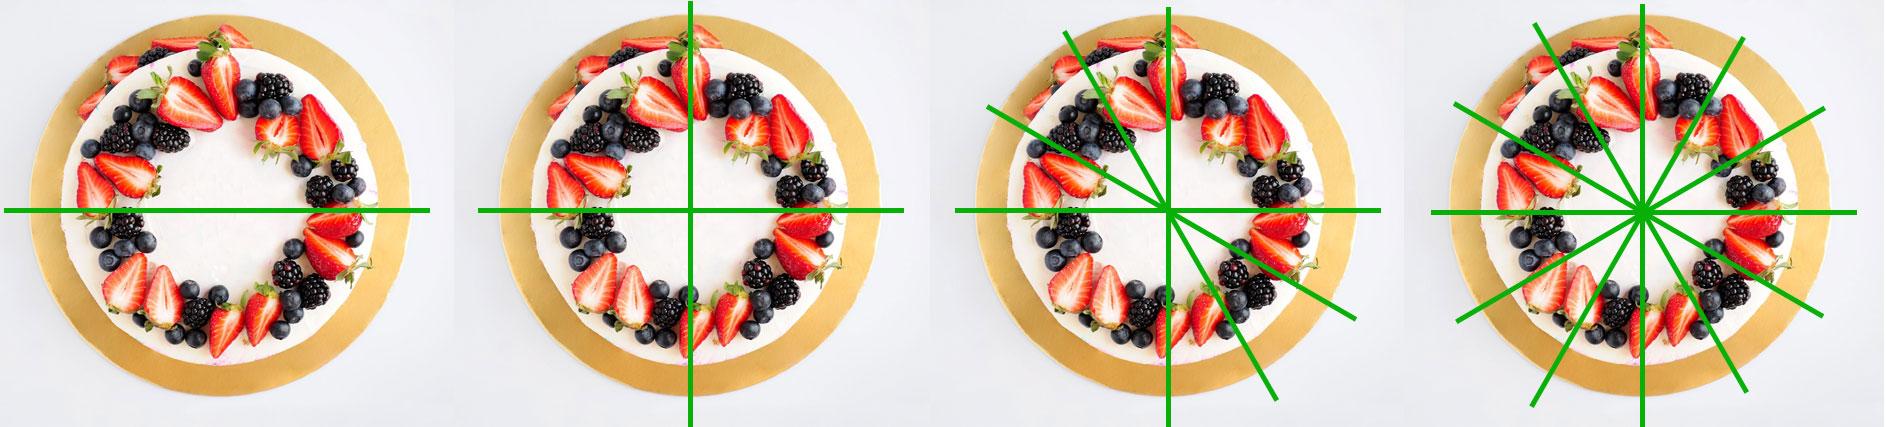 Как разделить круглый торт на 12 частей